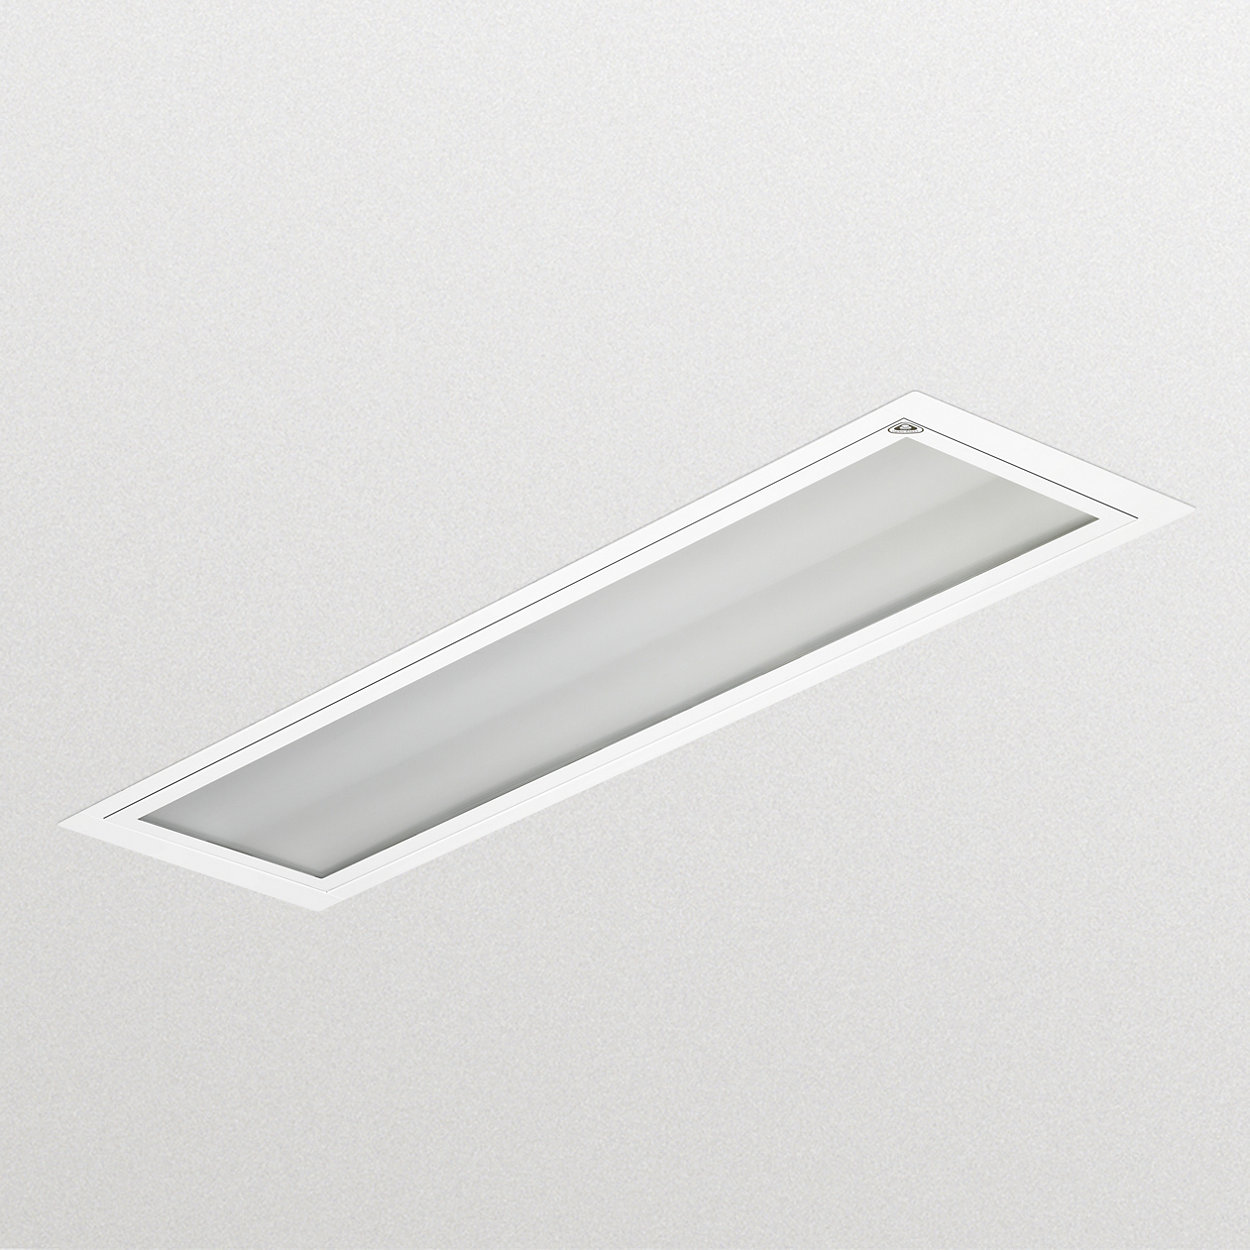 LED Reinraum – hygienisch und effizient